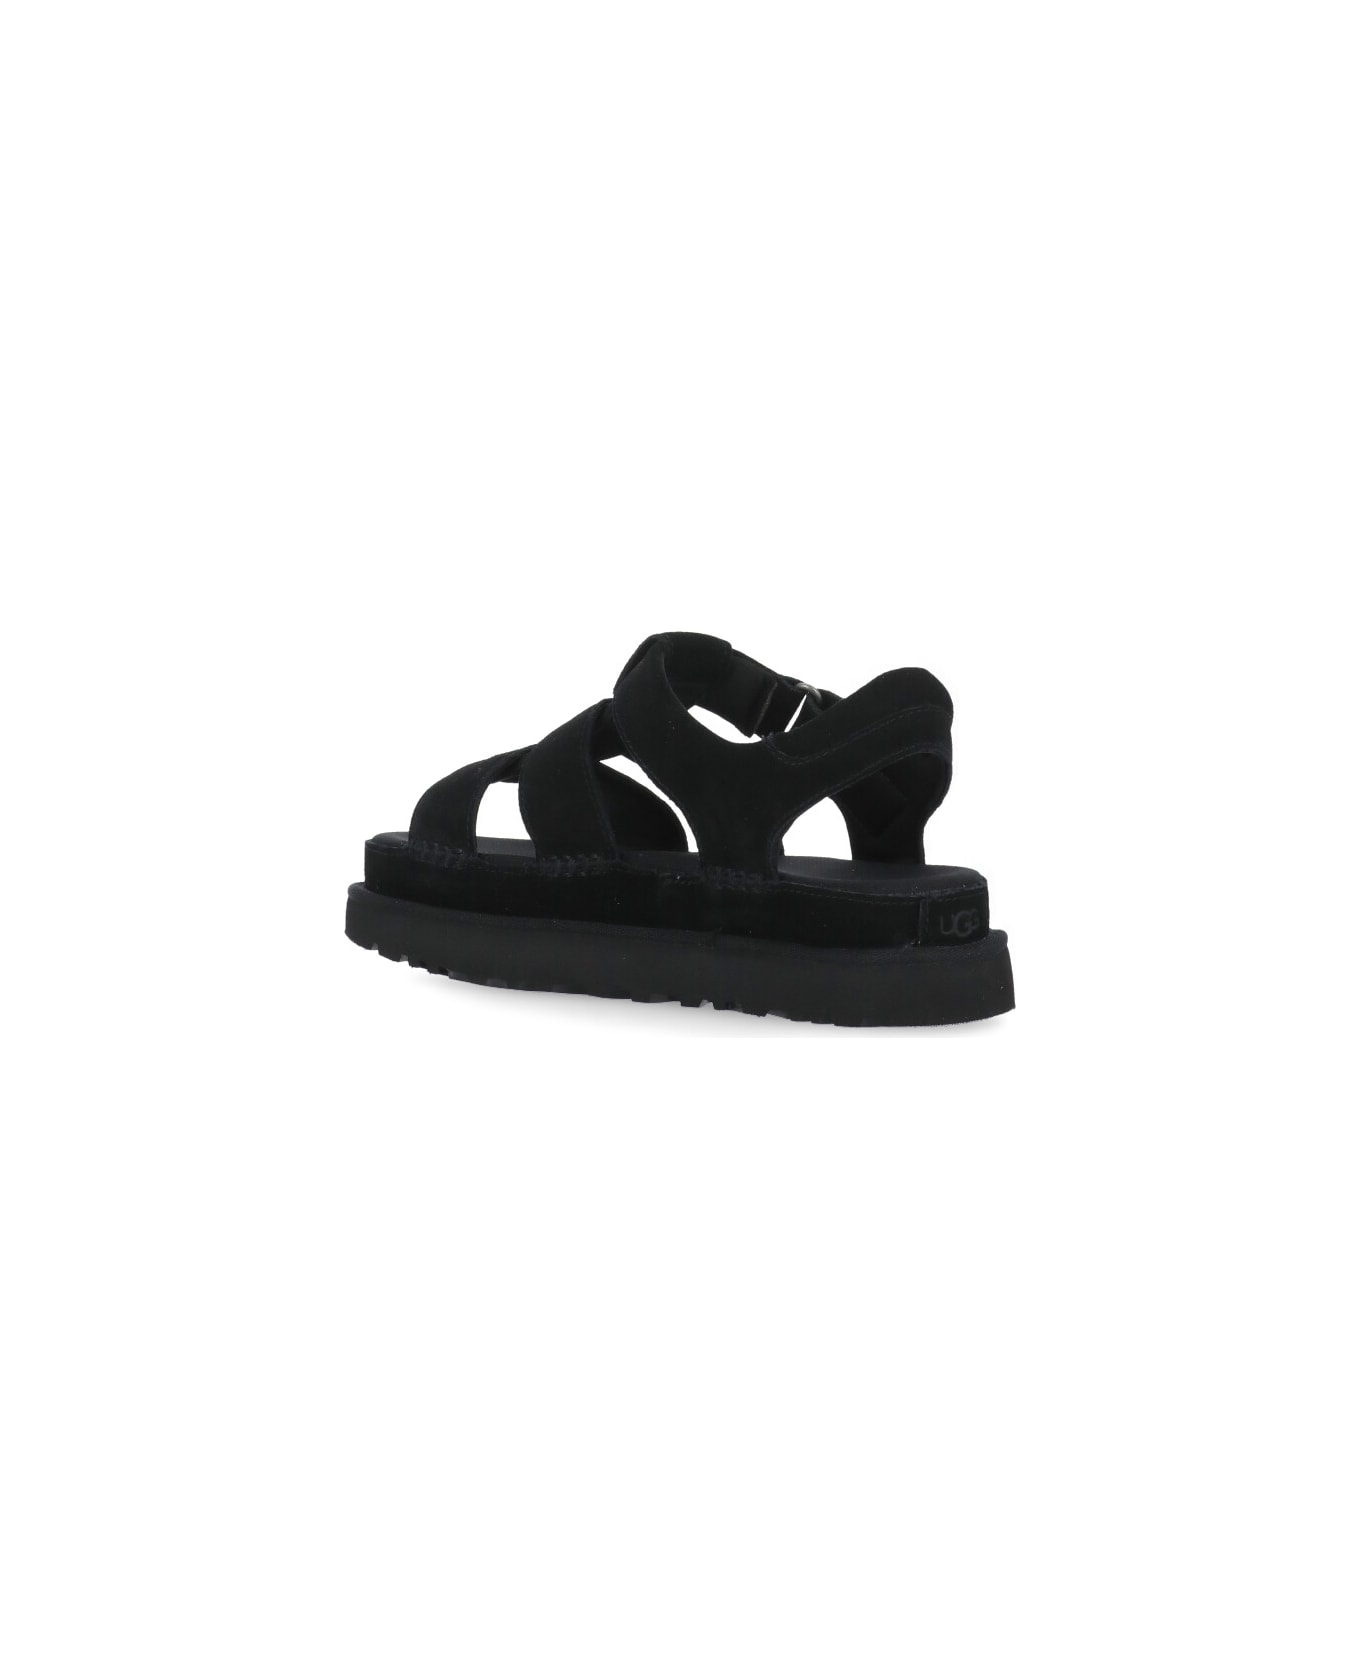 UGG Goldenstar Strap Sandals - Black